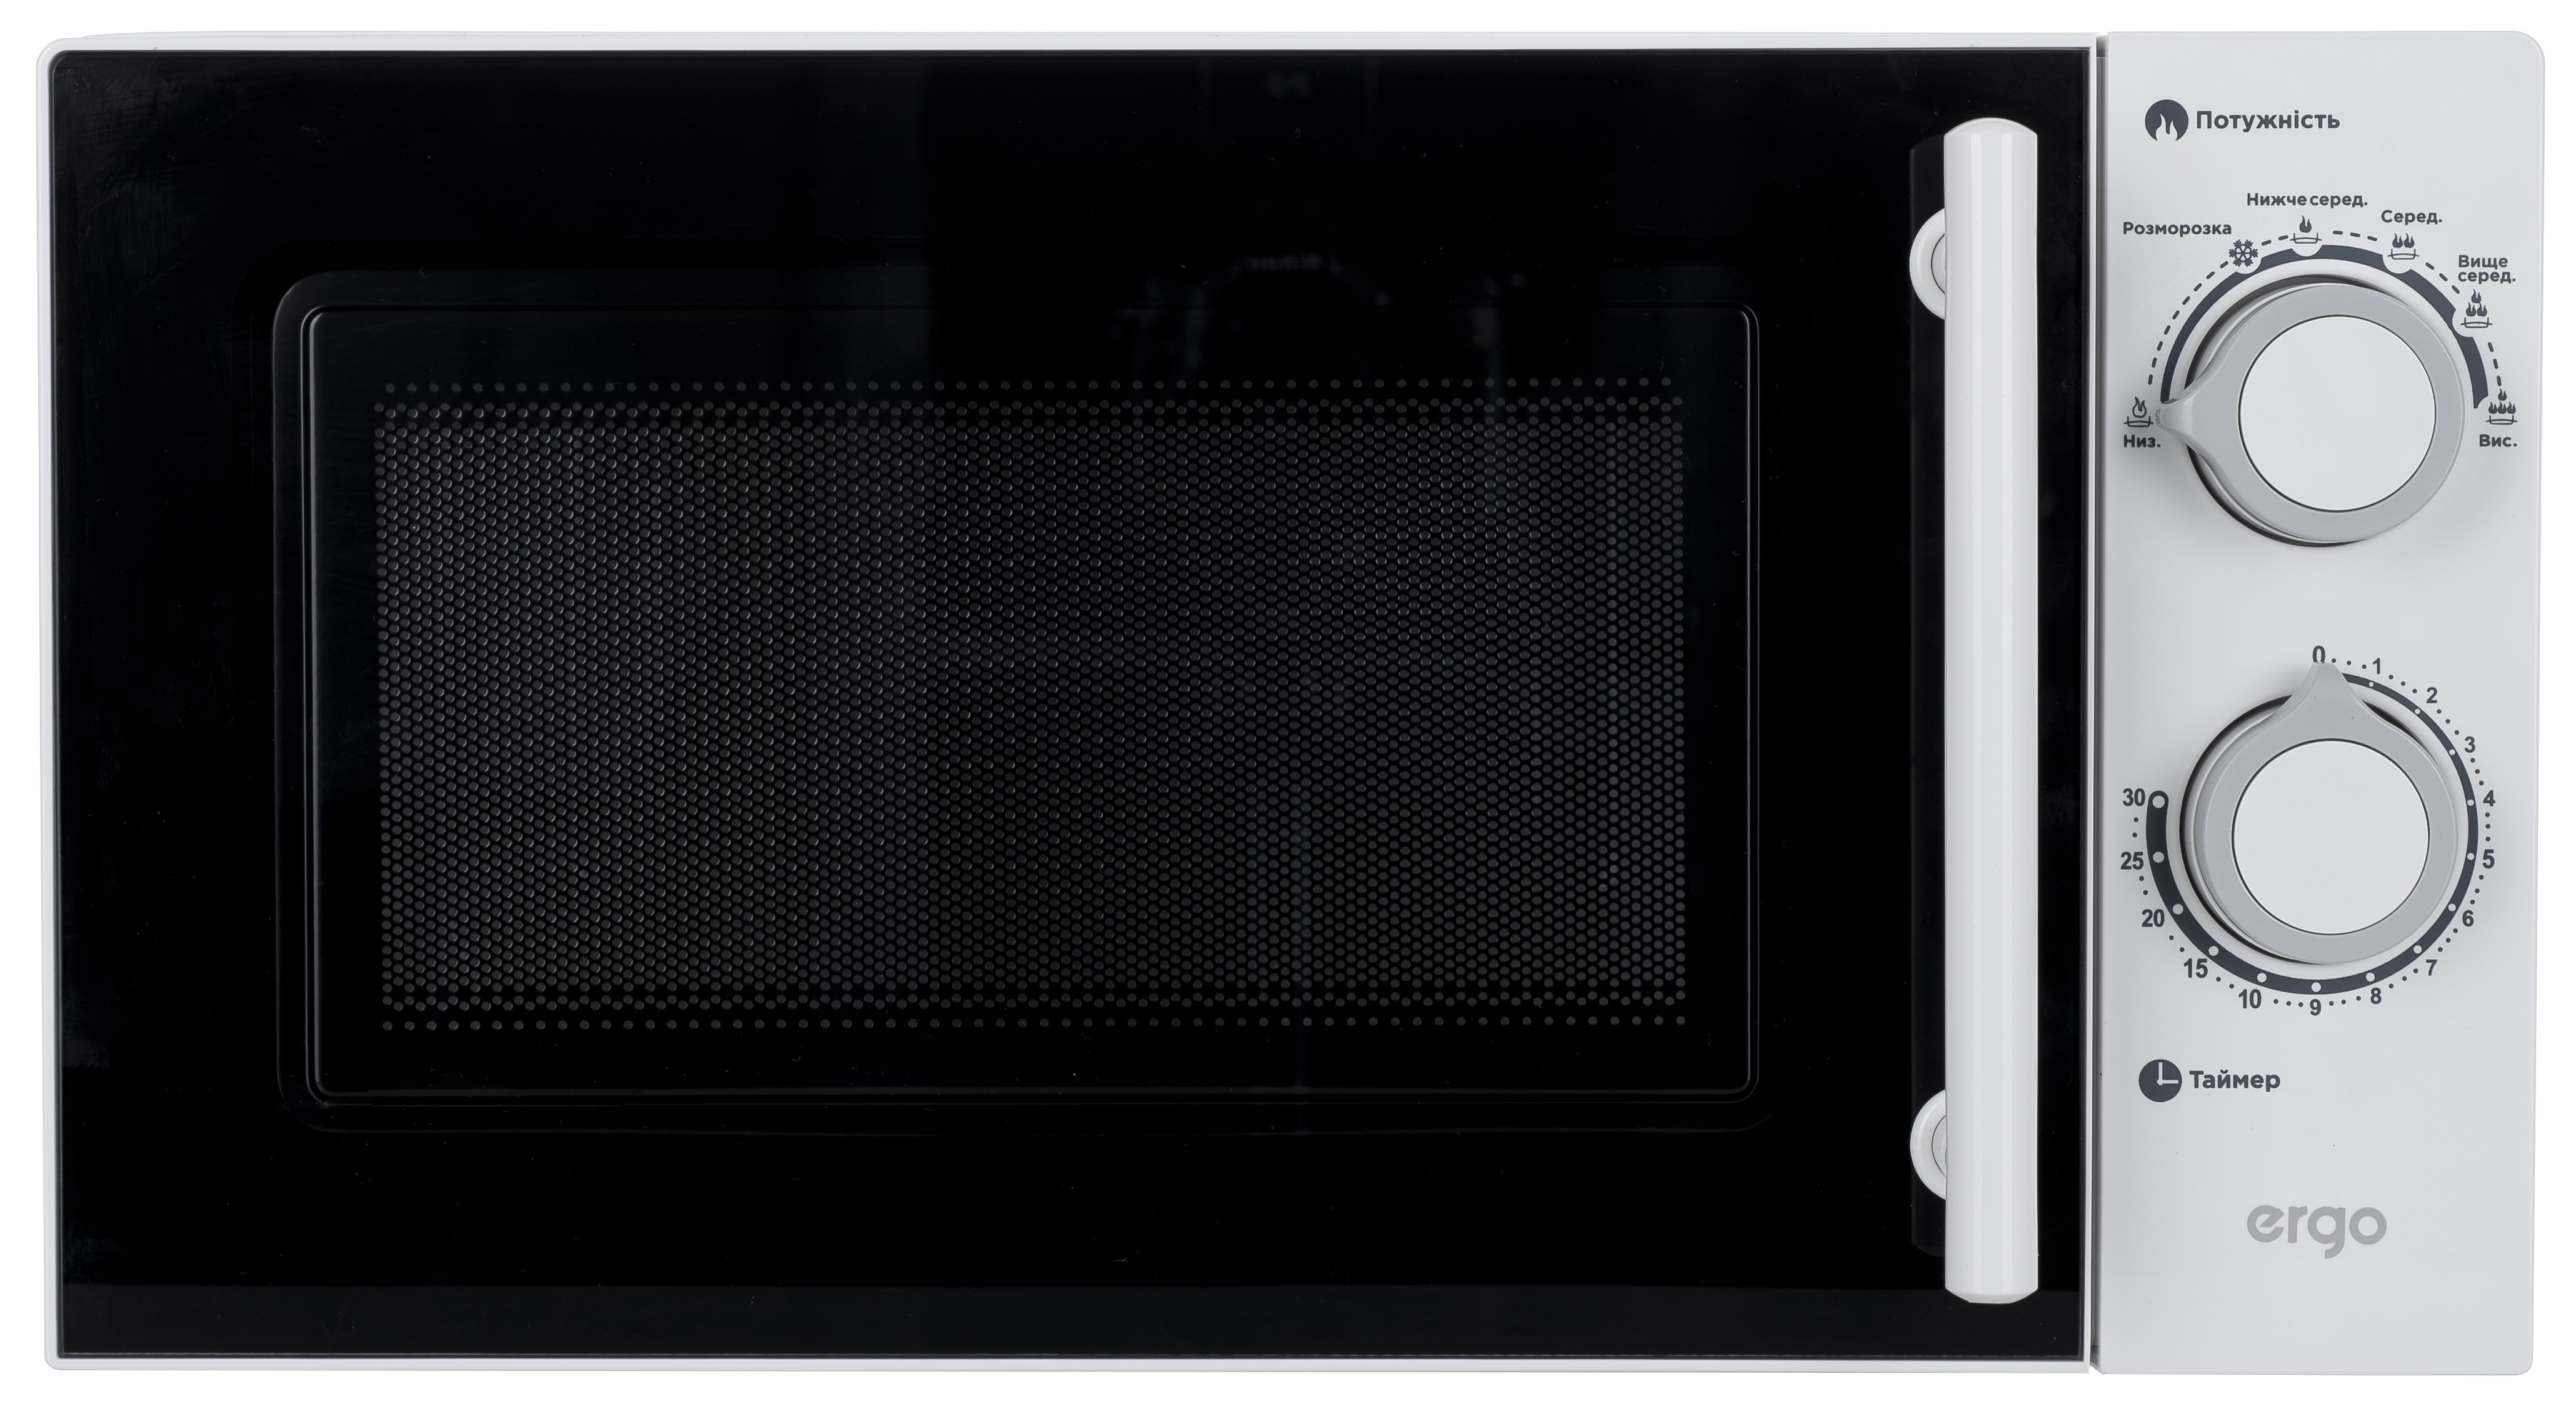 Микроволновая печь Ergo EM-2075 в интернет-магазине, главное фото